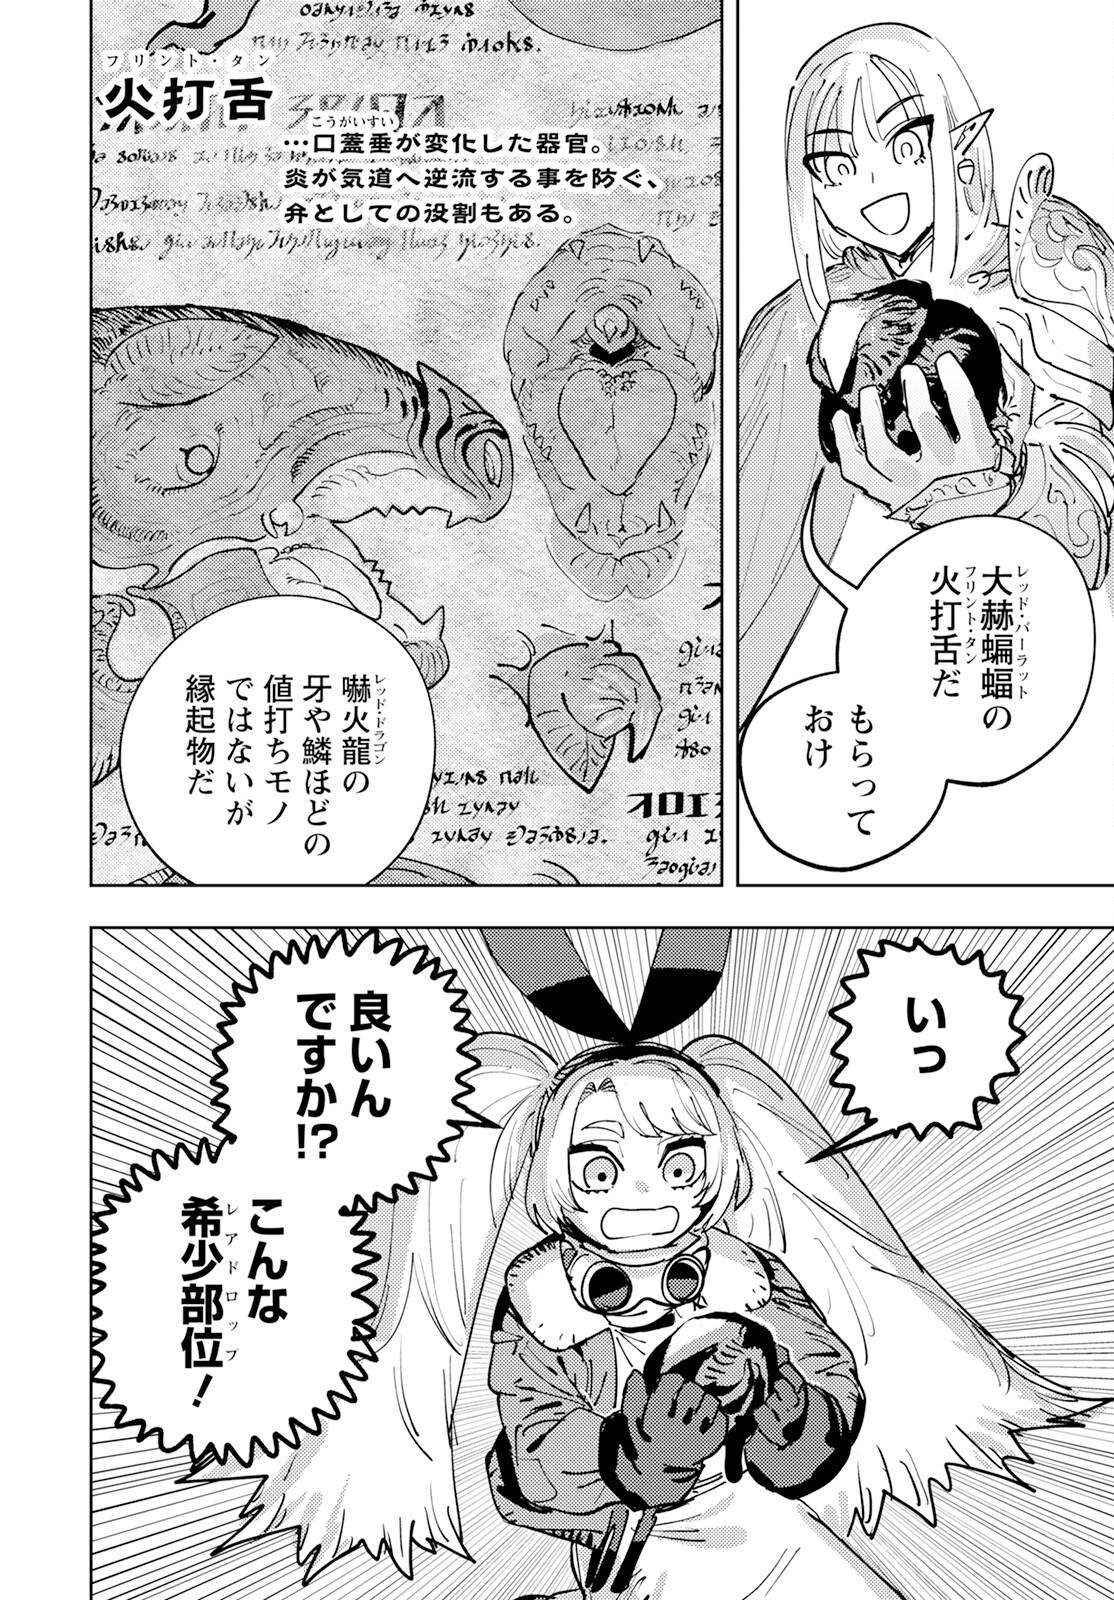 Bouken ni wa, Buki ga Hitsuyou da! – Kodawari Rudy no Kajiya Gurashi - Chapter 1 - Page 41